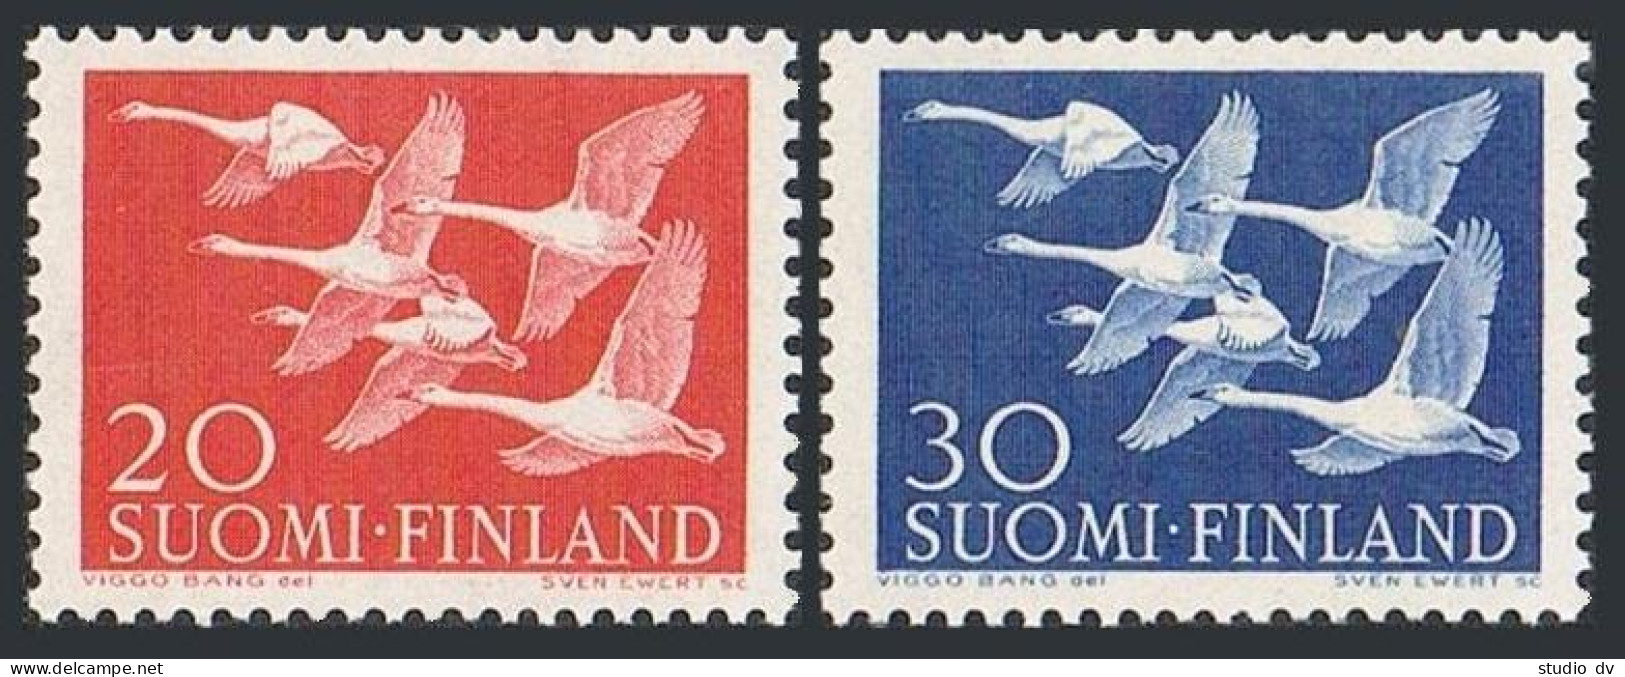 Finland 343-344, MNH. Michel 465-466. Norther Cooperation, 1956. Whooper Swans. - Ongebruikt